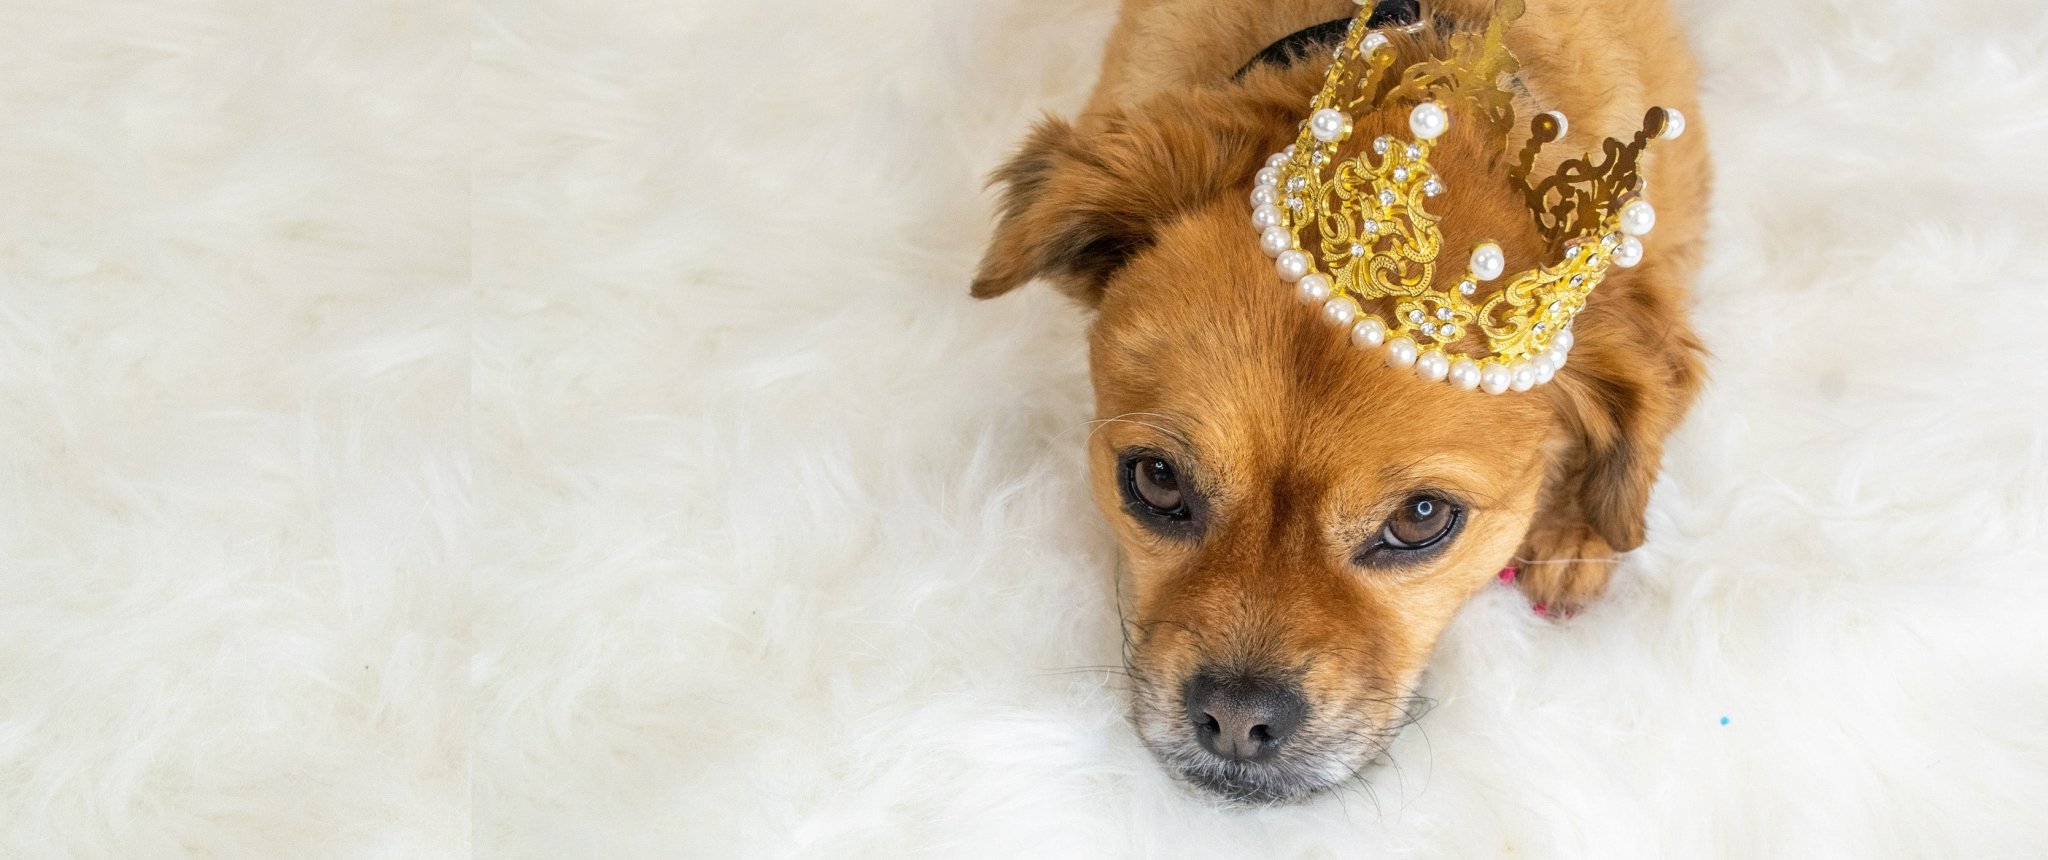 Behandel uw huisdieren als royalty – Sofa Potatoes-meubels